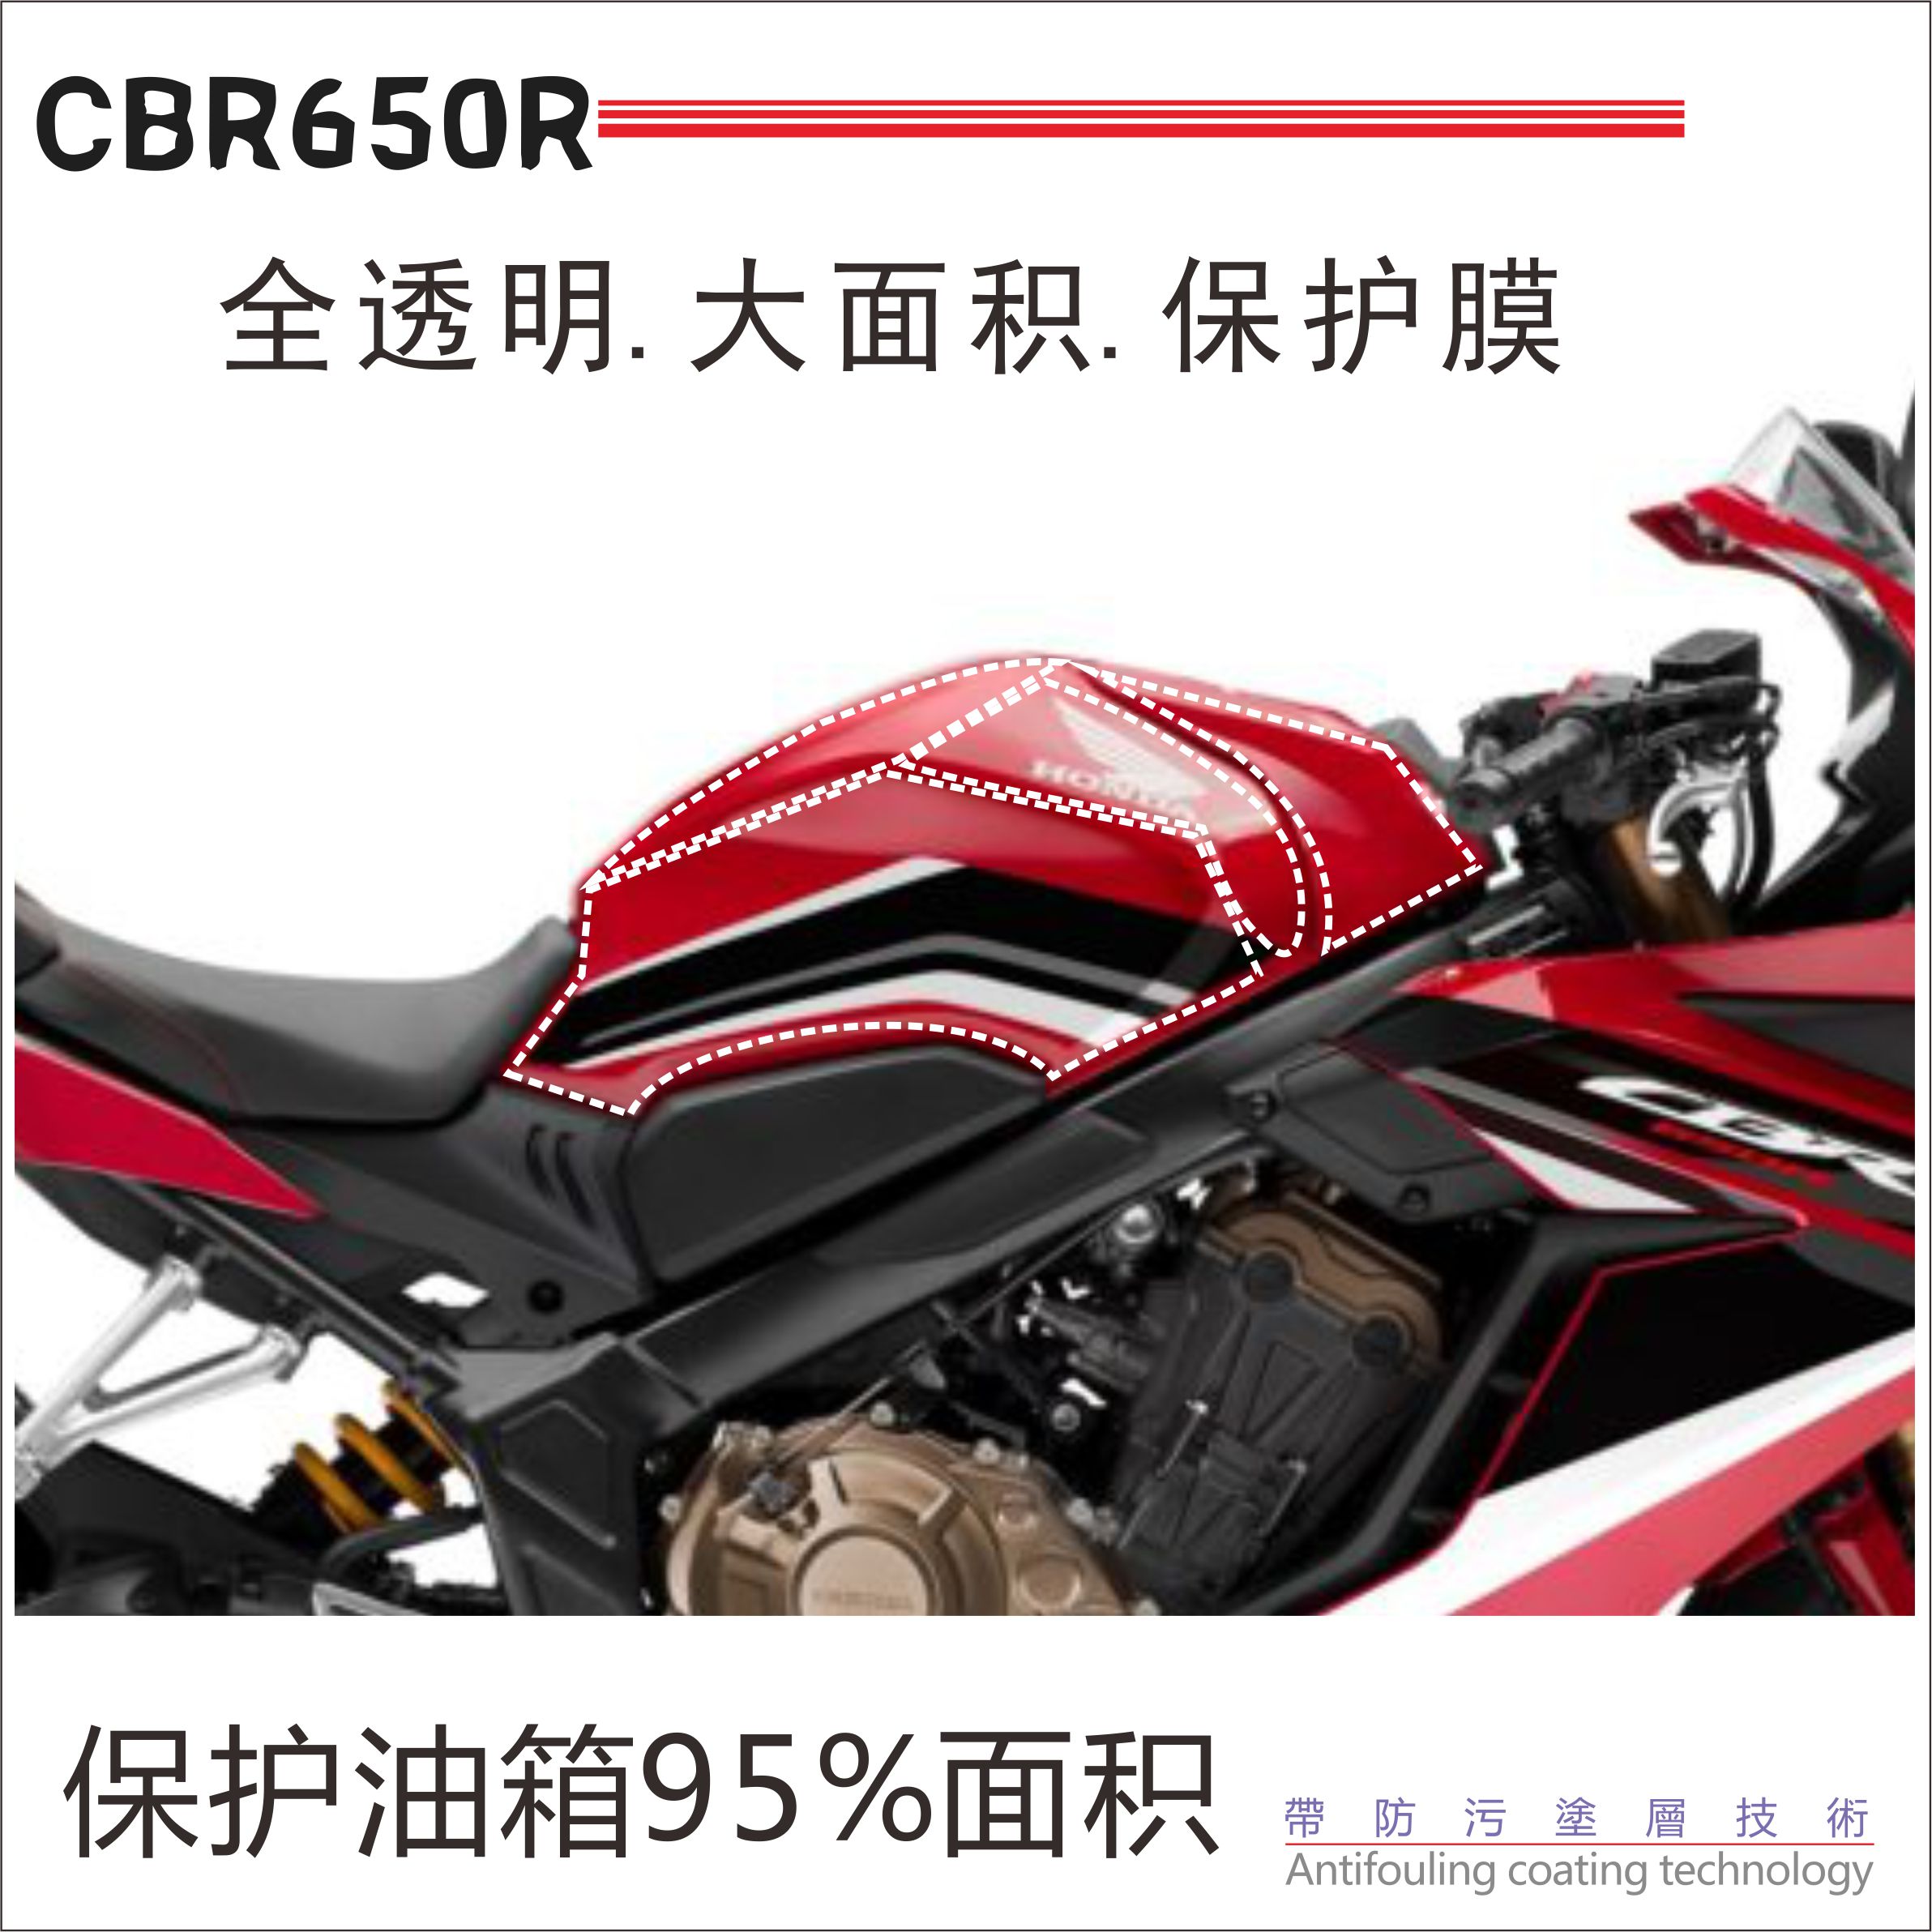 本田摩托车cb650r图片